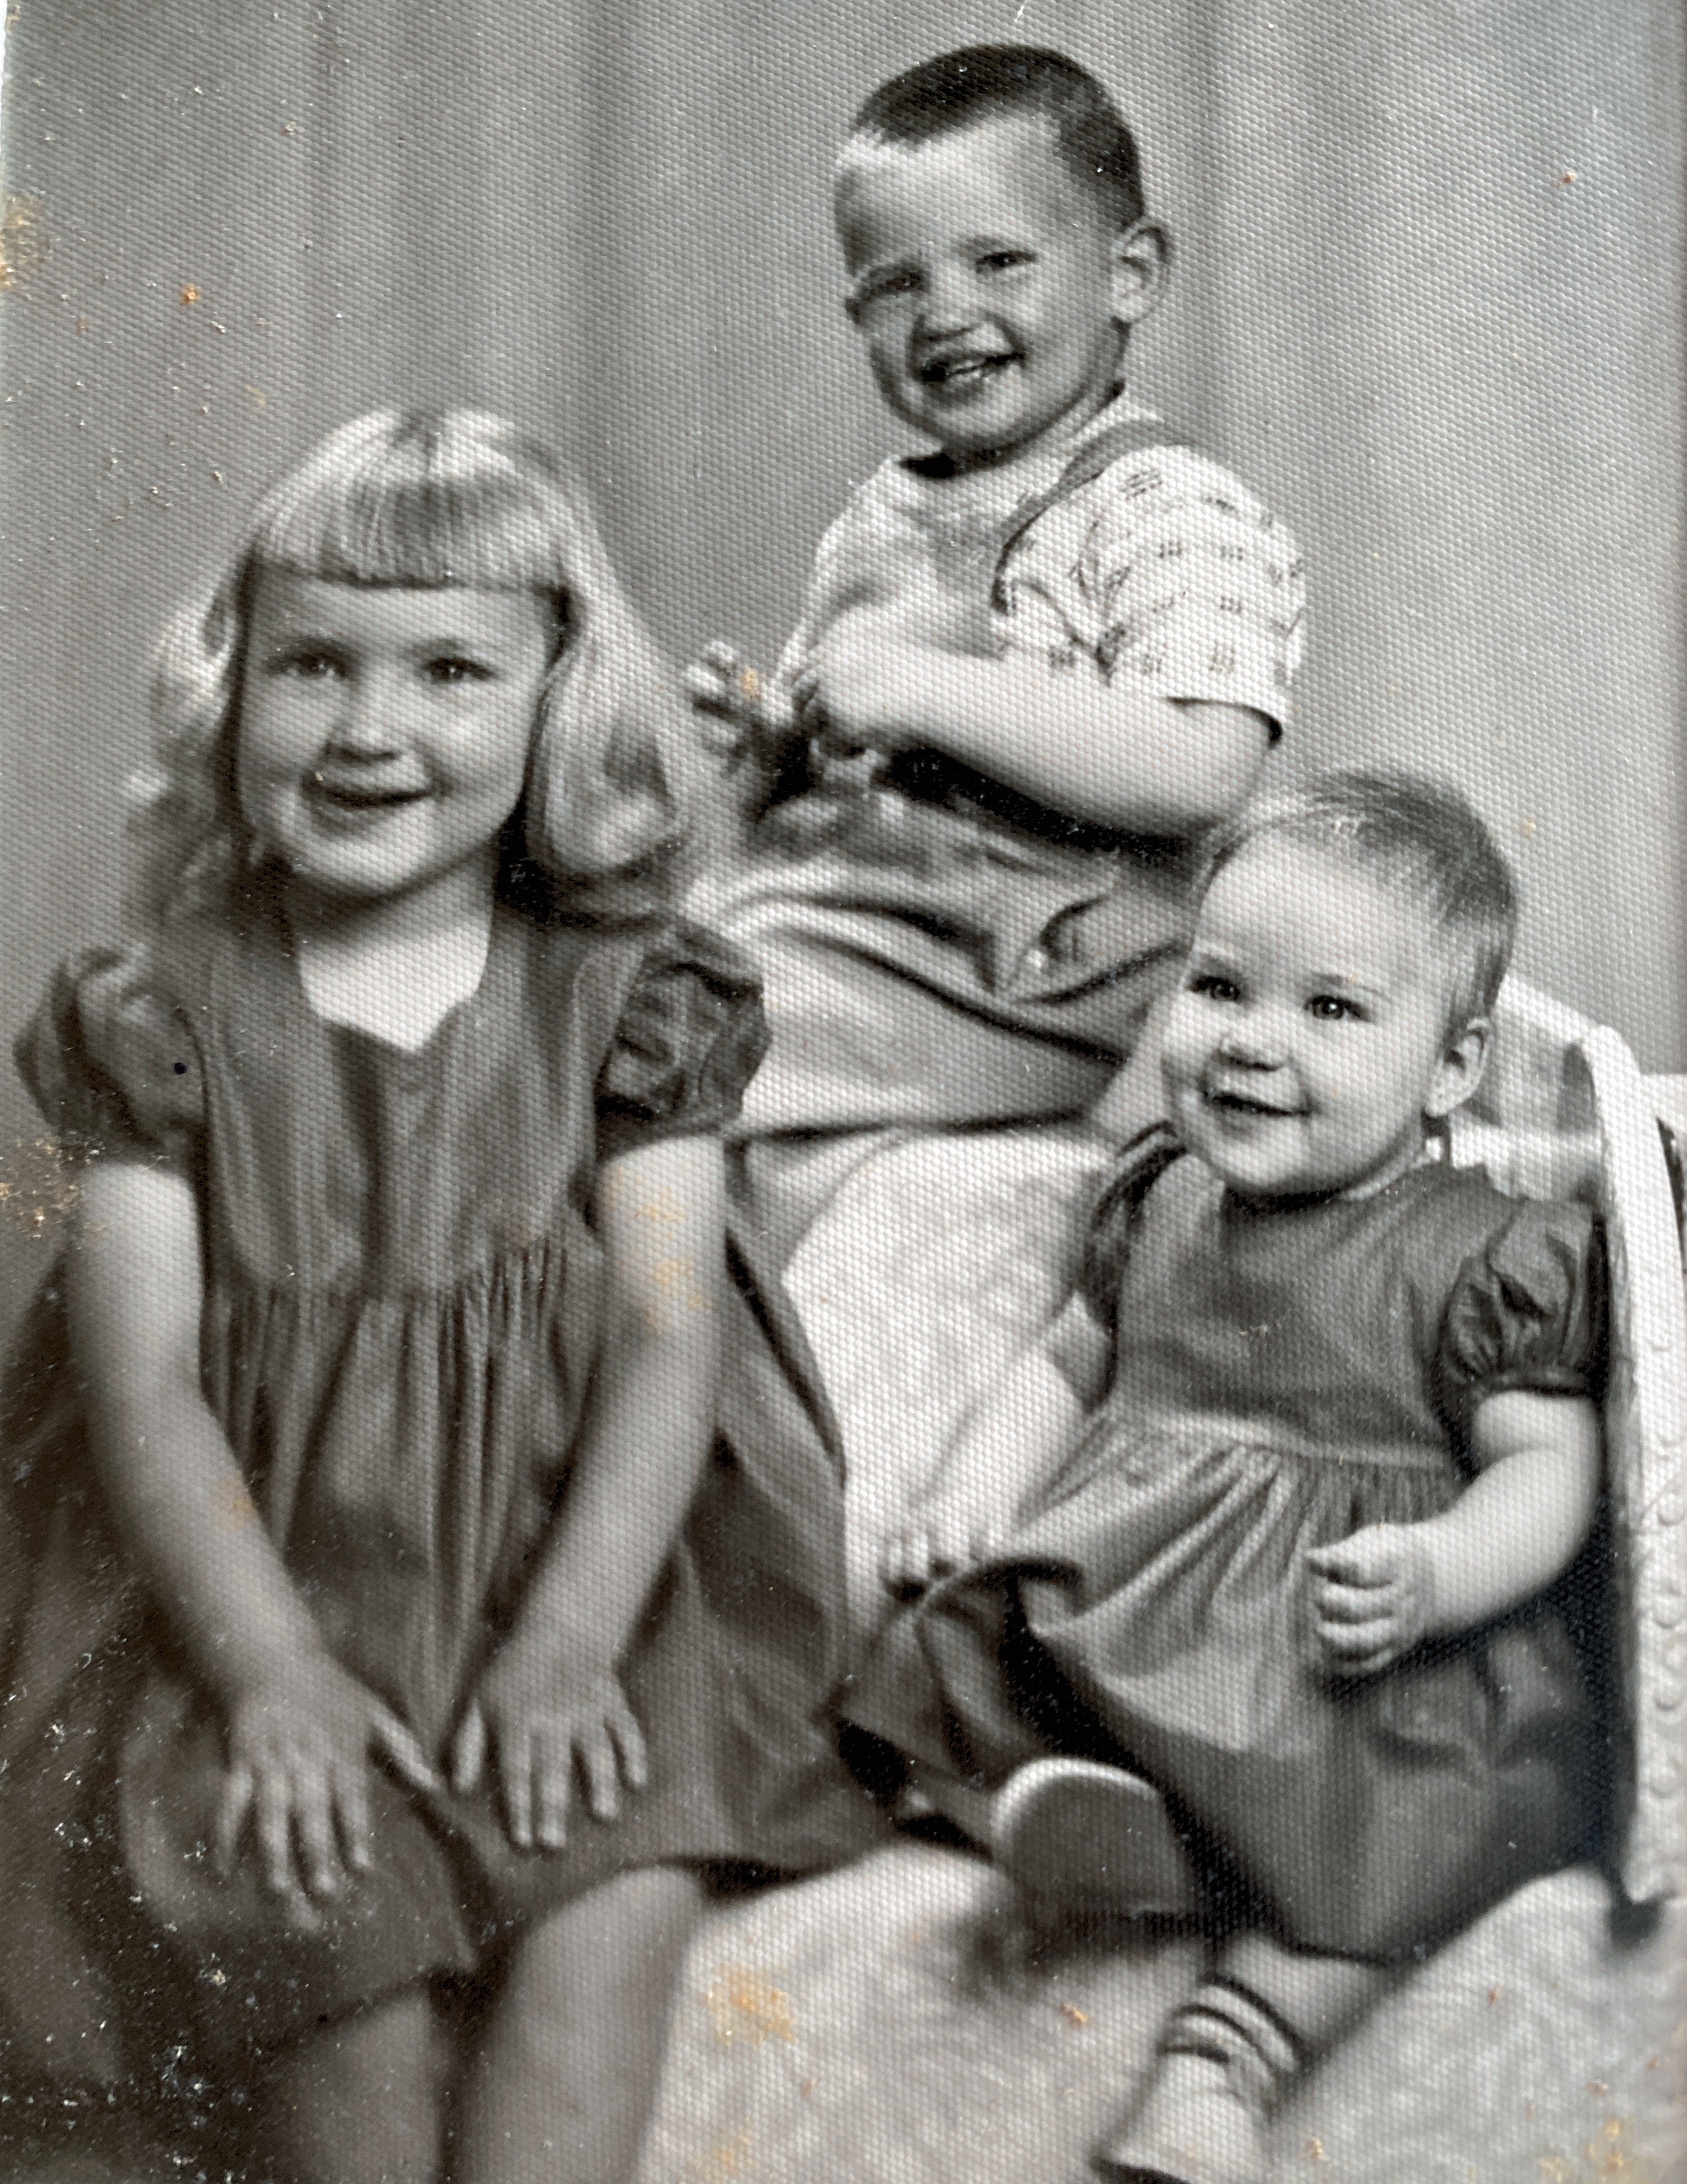 Carole, Doug and Sue January 8, 1953